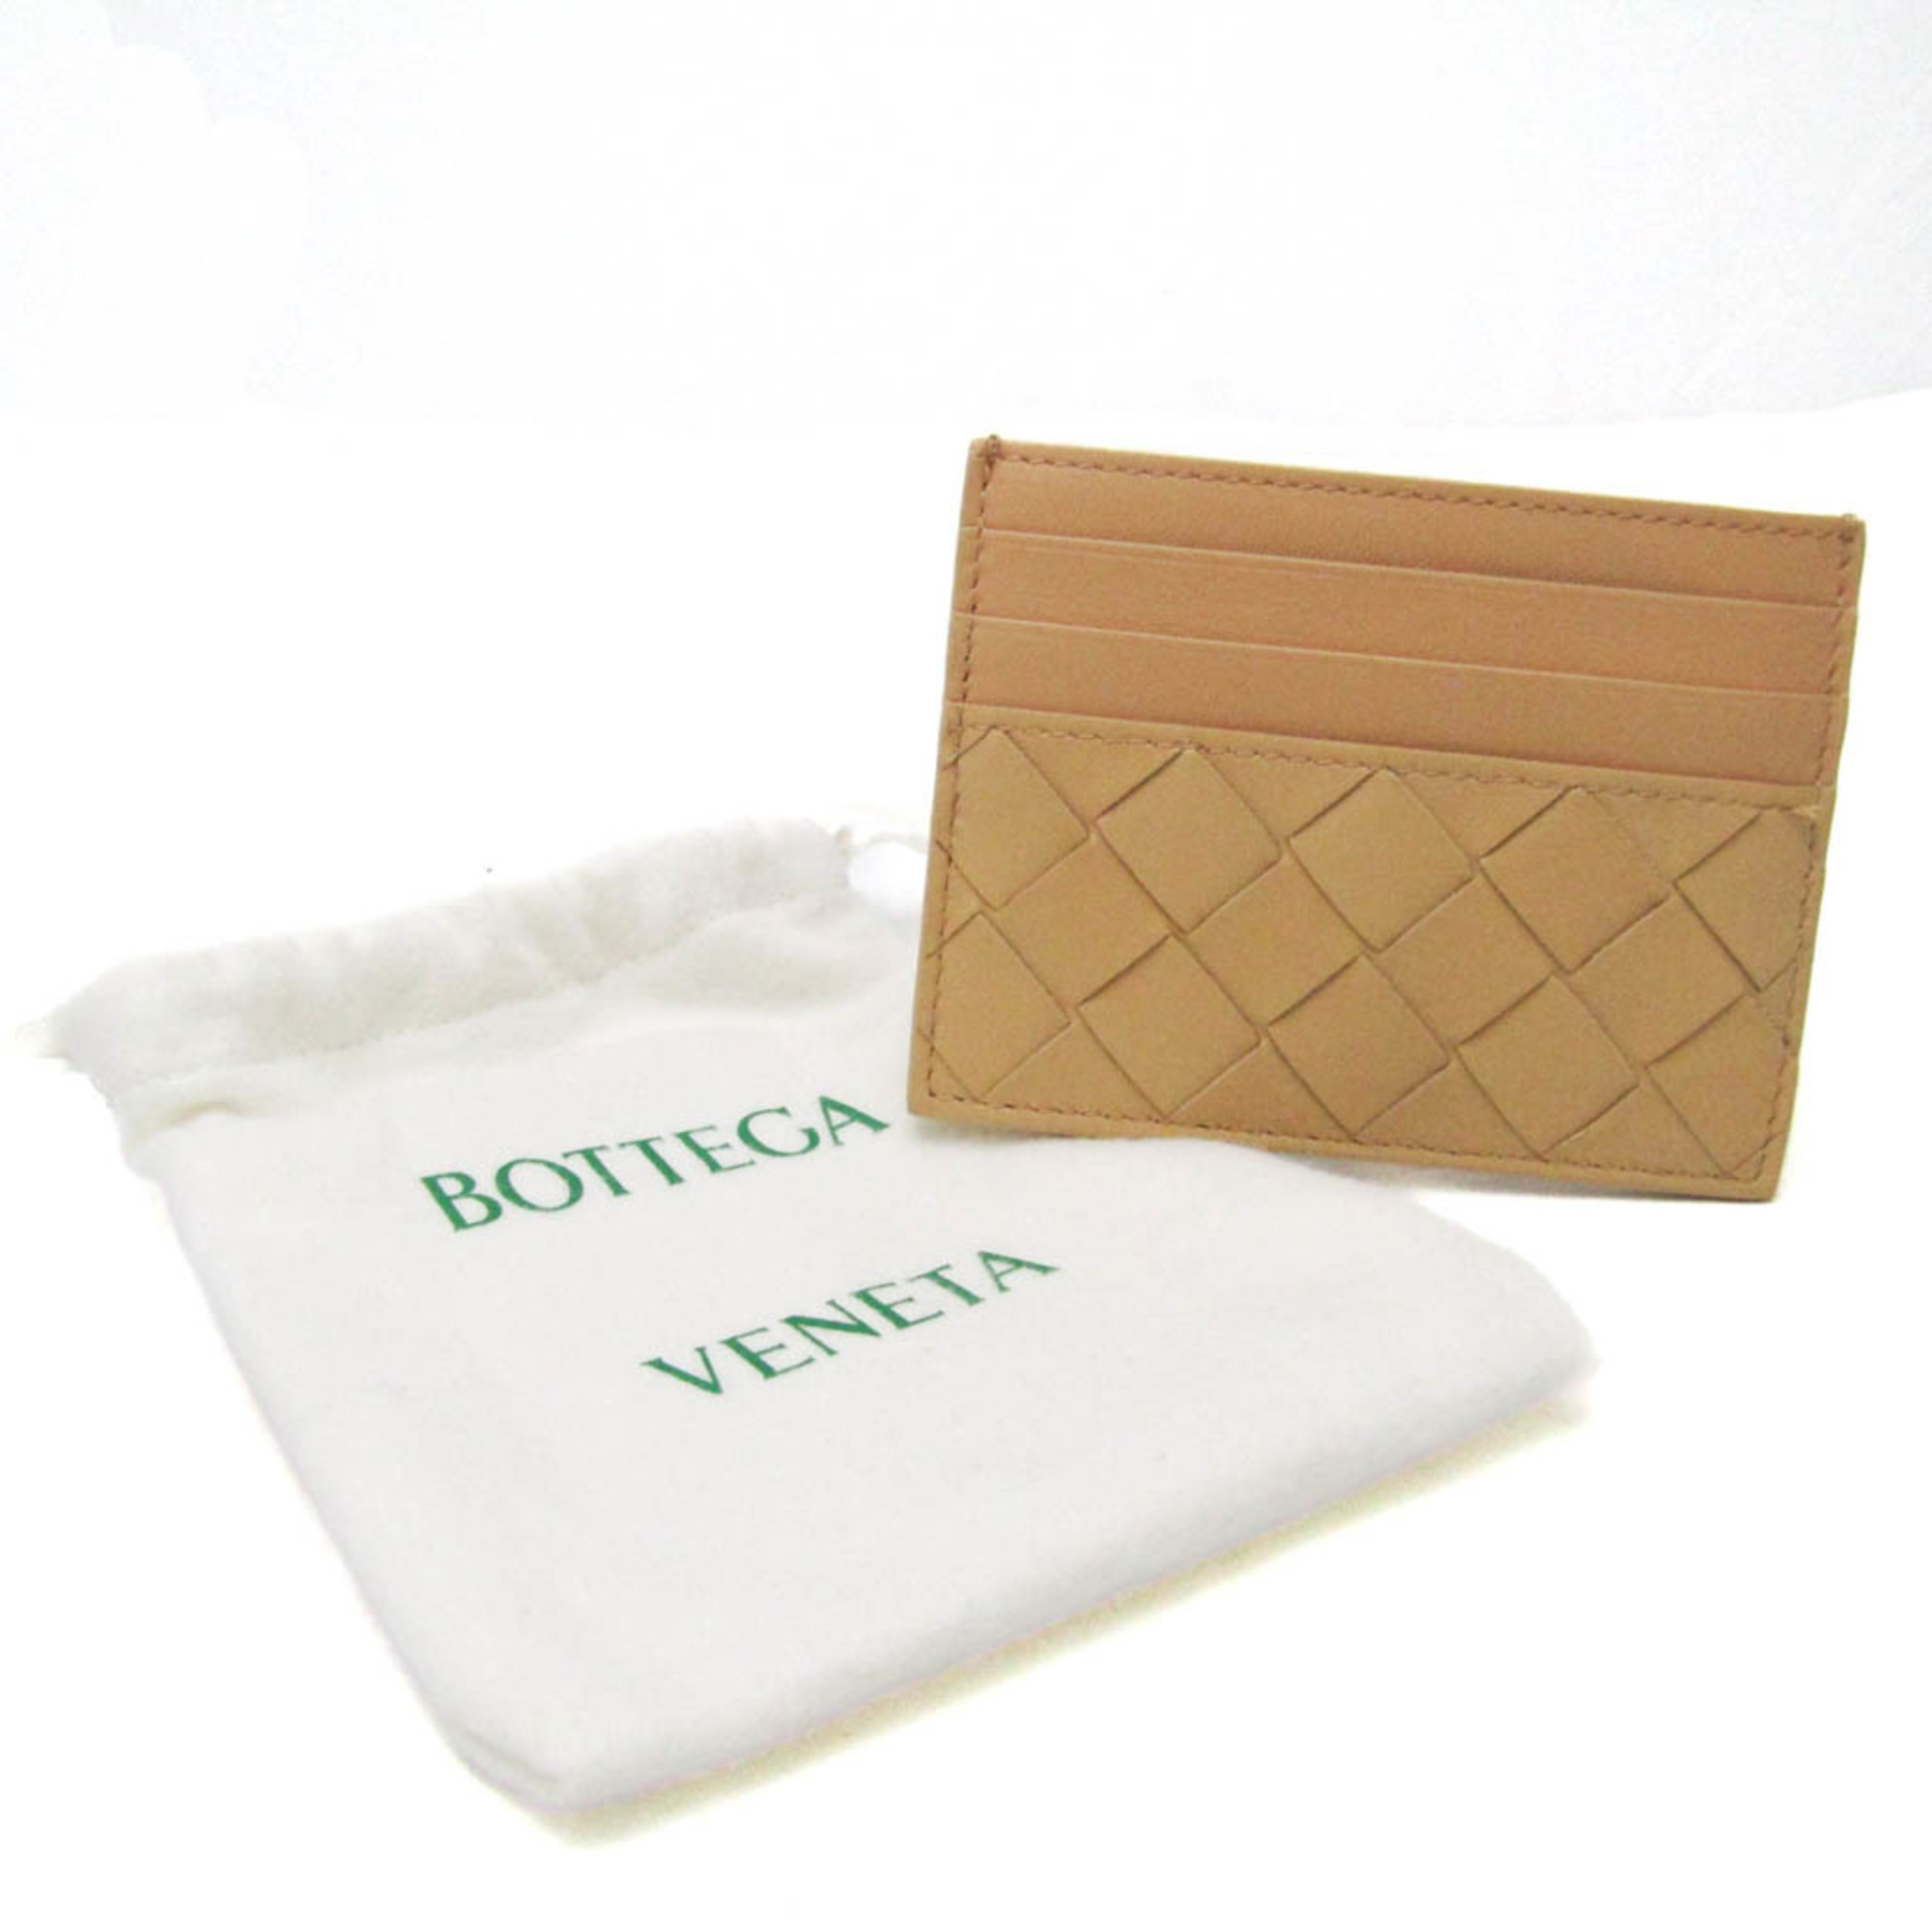 ボッテガ・ヴェネタ(Bottega Veneta) イントレチャート レザー カードケース ベージュ